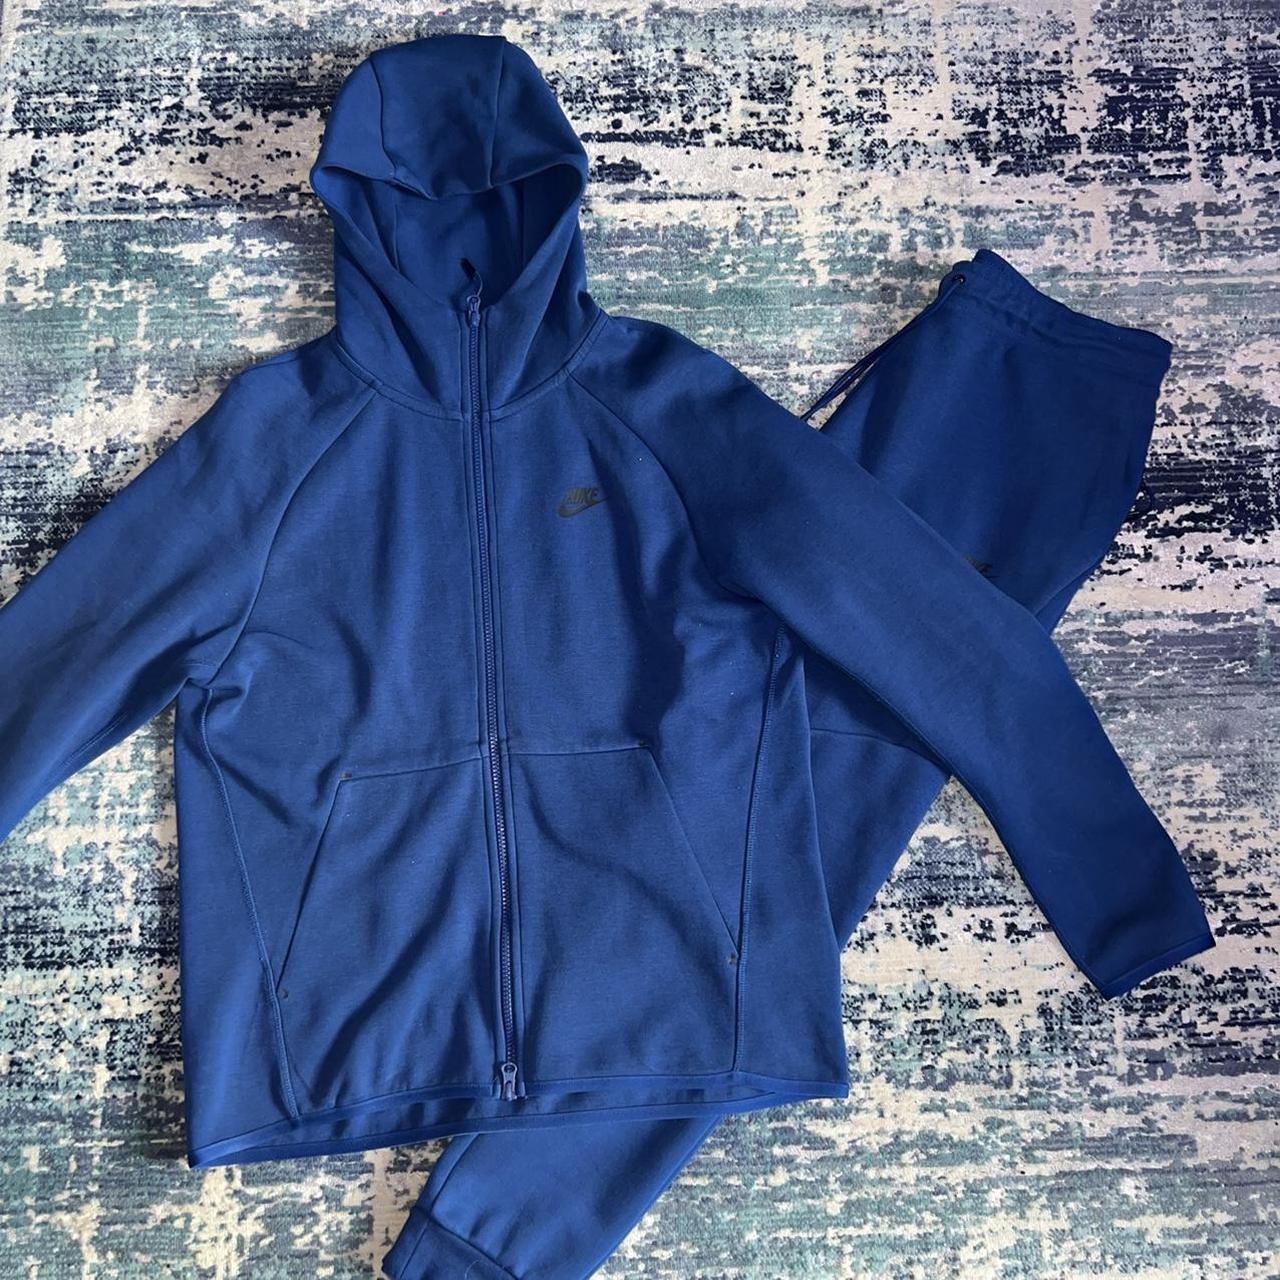 blue old season tech fleece size medium hoodie,... - Depop